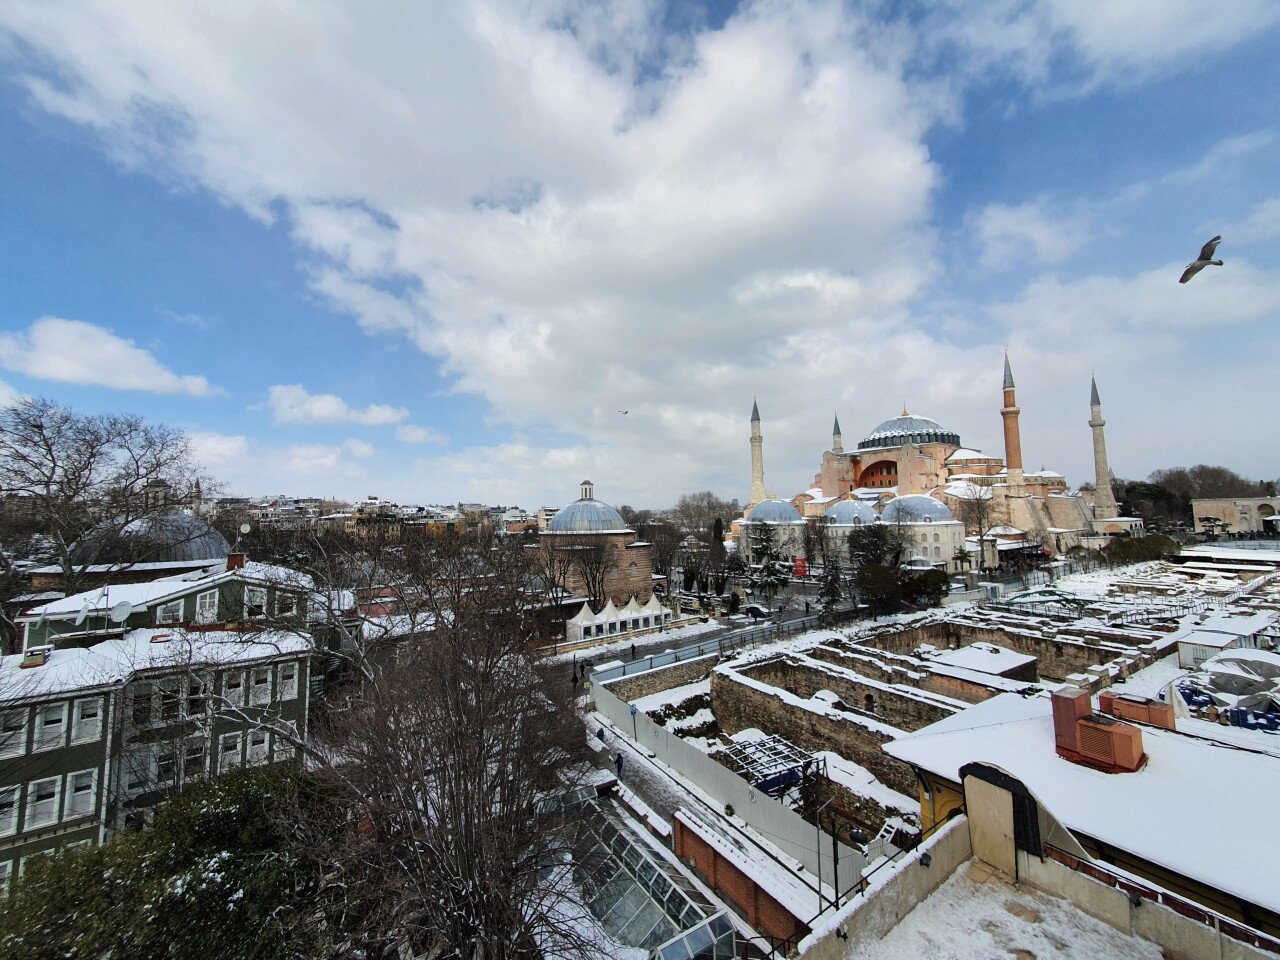 20220311_132419.jpg 터키 이스탄불 3월인데 눈 엄청 많이 왔네요 ㅎㅎ